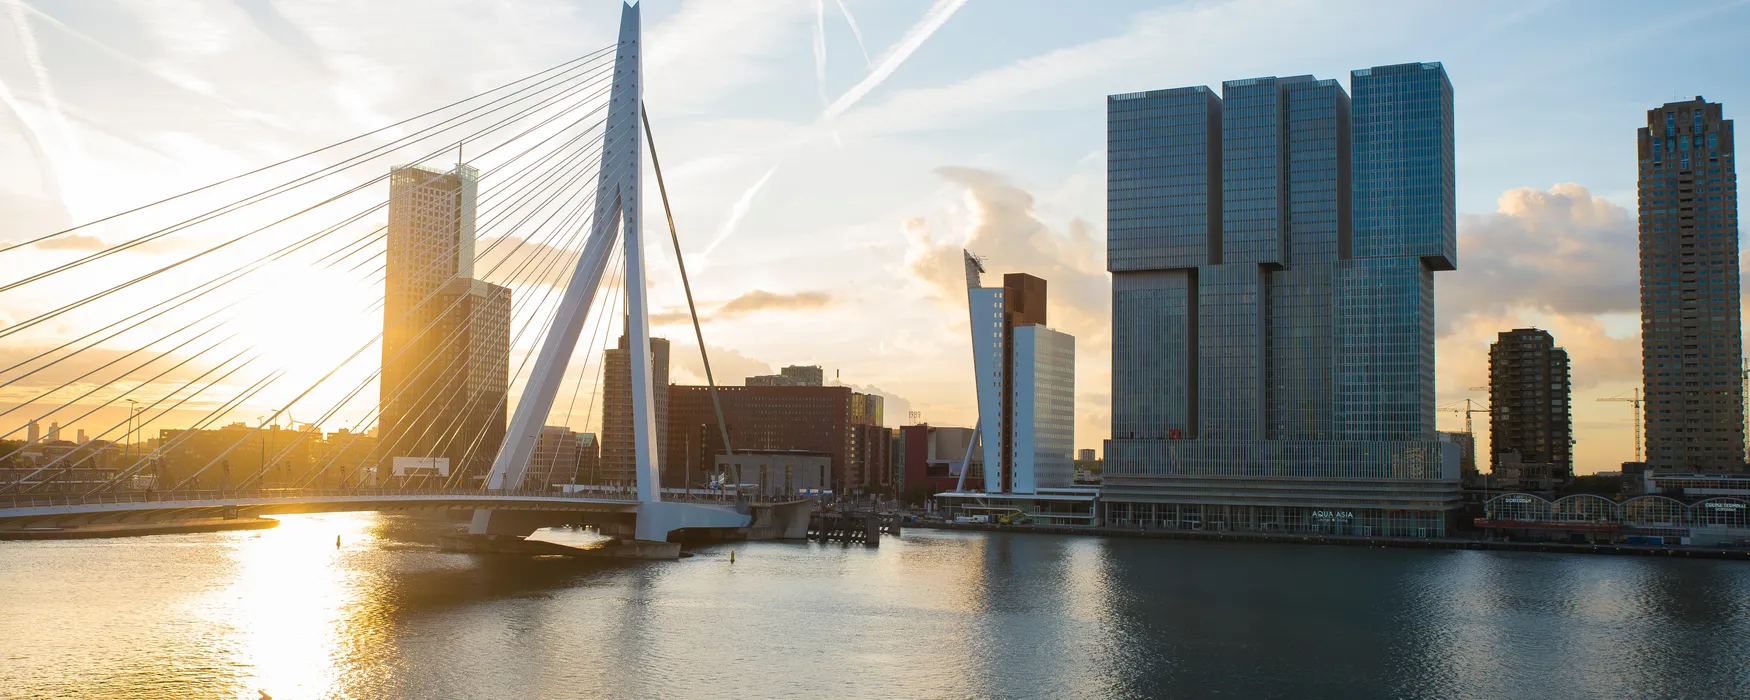 Rotterdam, Holandia: atrakcje piękne widoki nad miastem